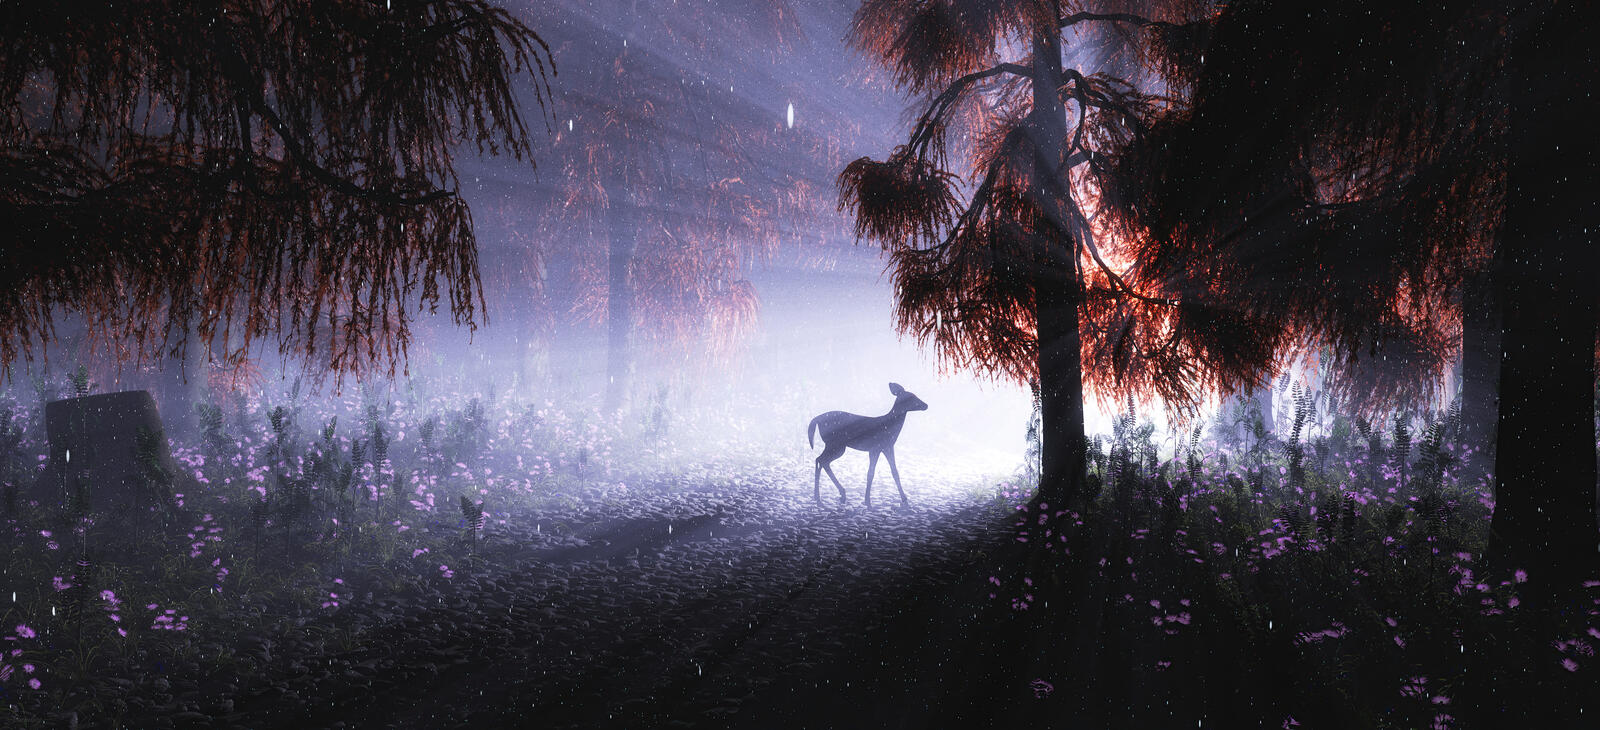 Wallpapers deer night shine headlights on the desktop